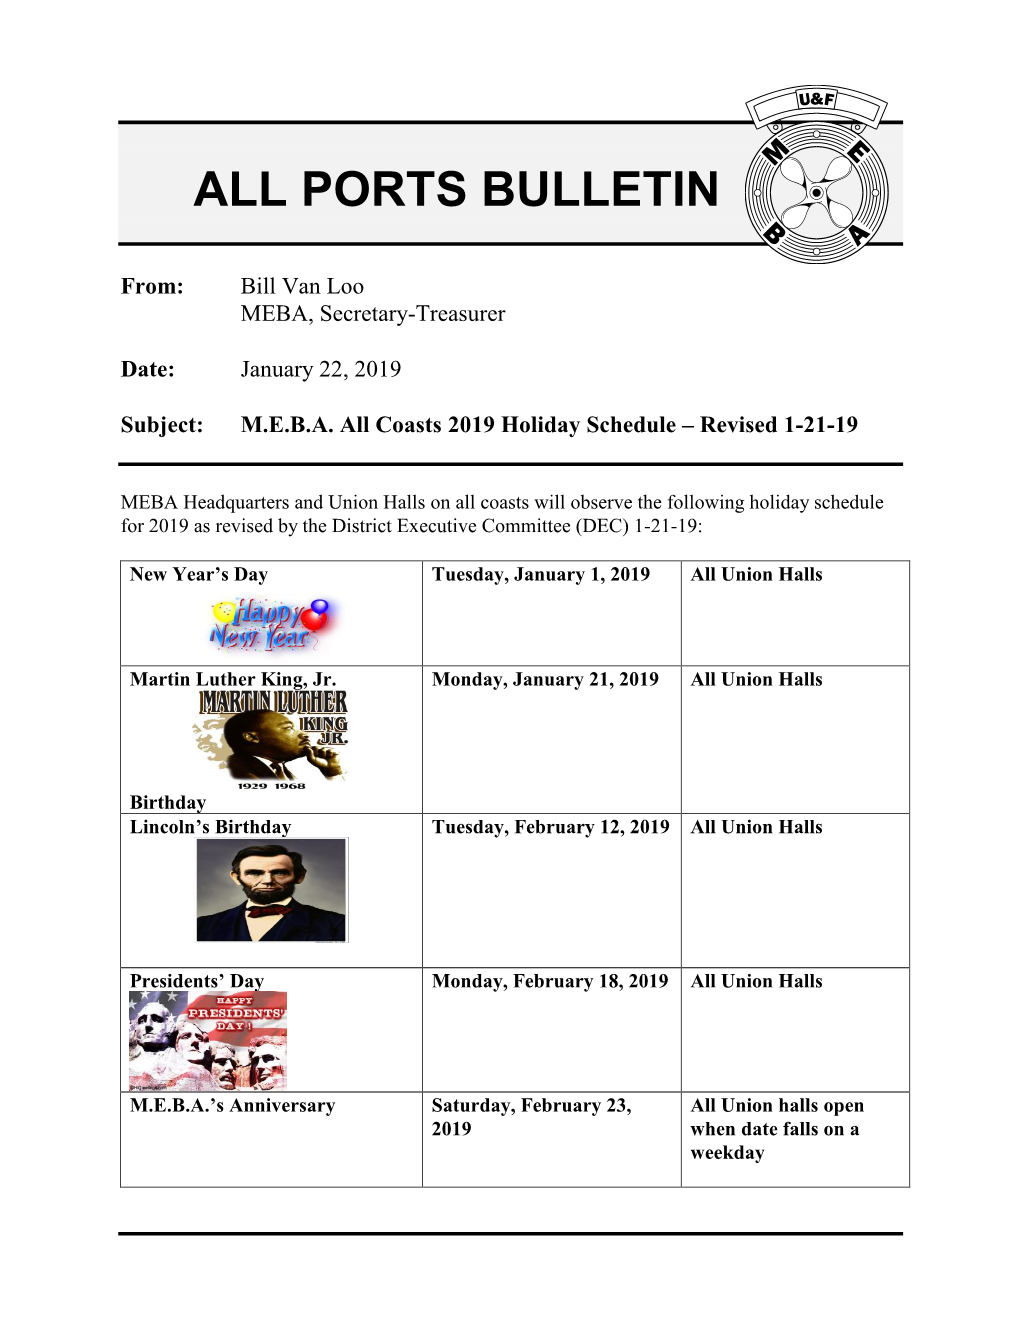 All Ports Bulletin